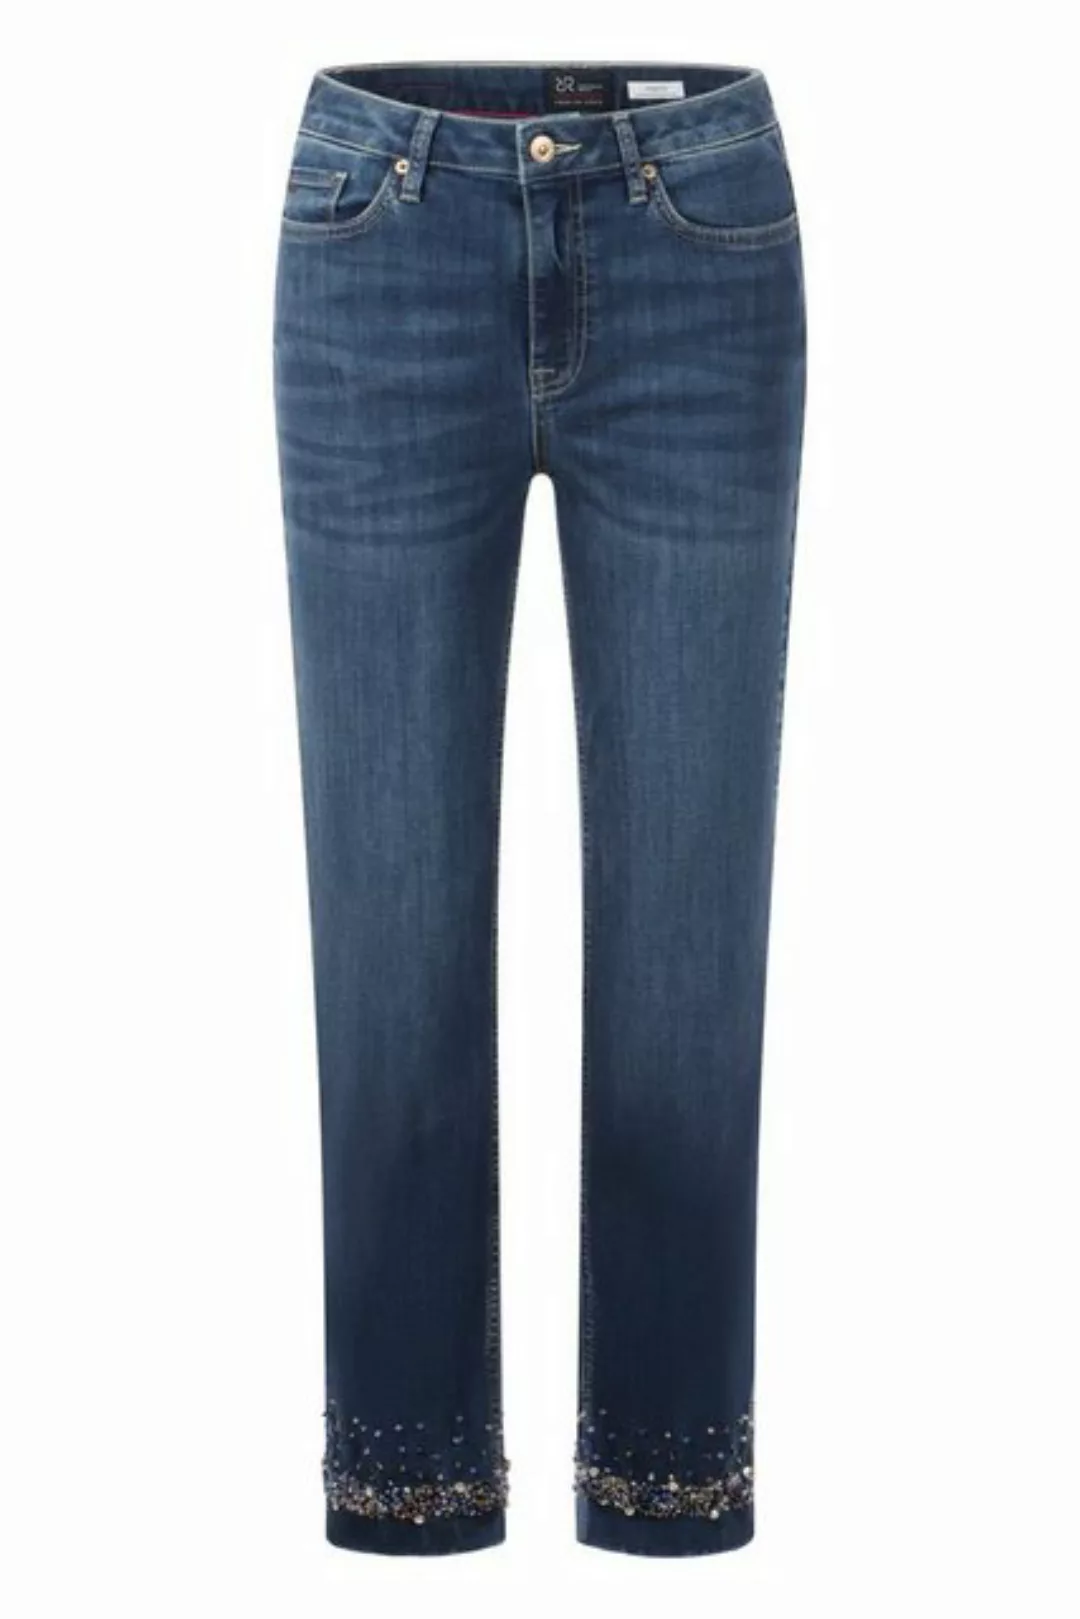 Raffaello Rossi 5-Pocket-Jeans Nolina 7/8 Deco Sommer günstig online kaufen